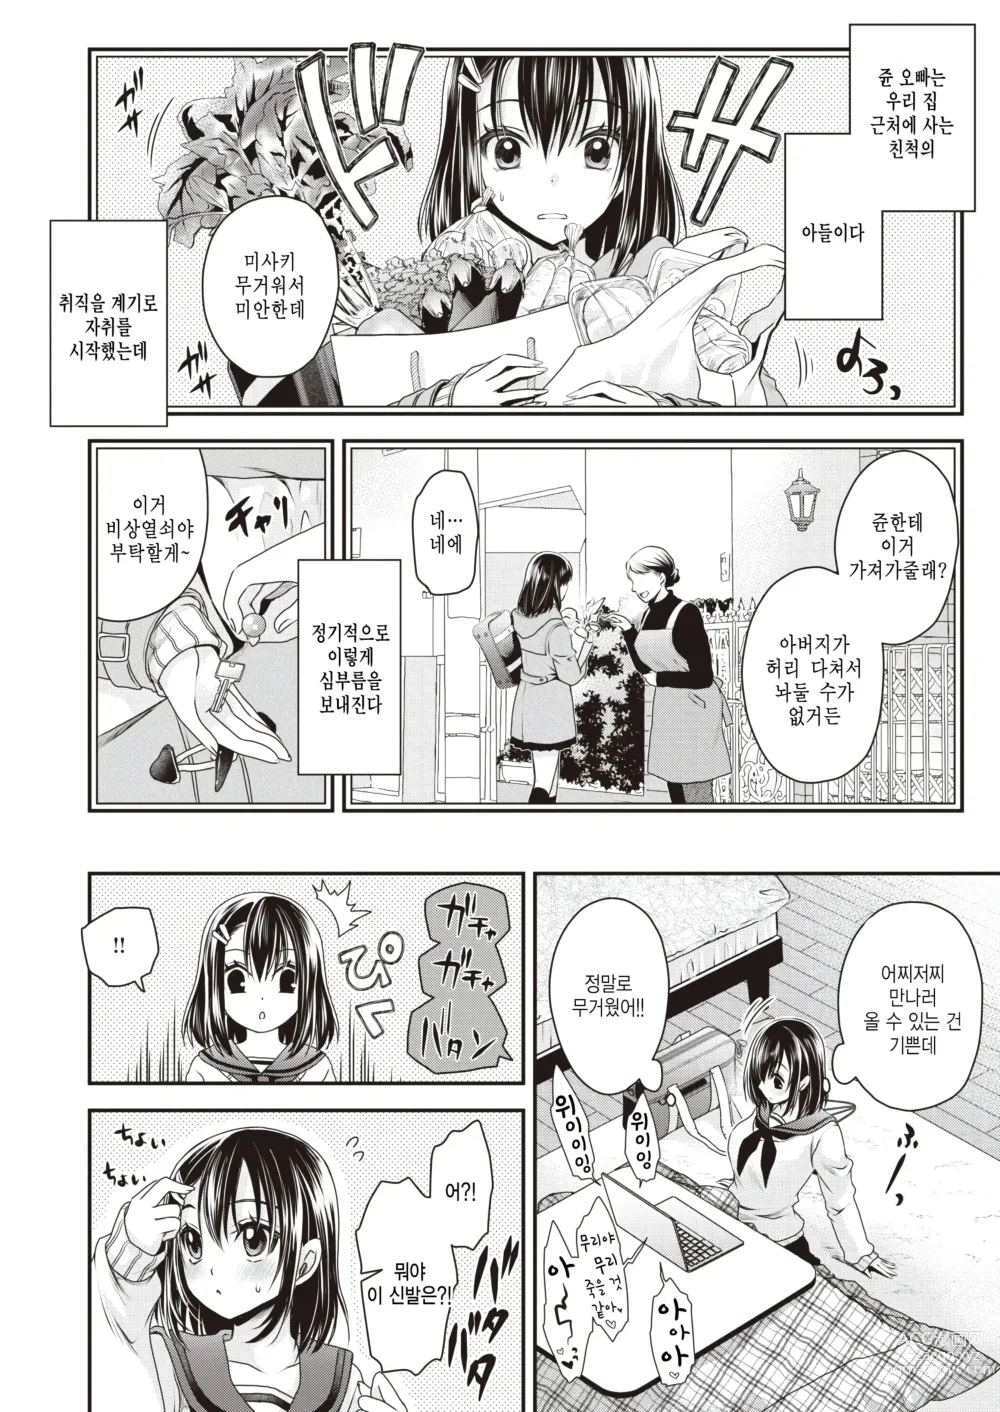 Page 2 of manga Chiteki Koukishin